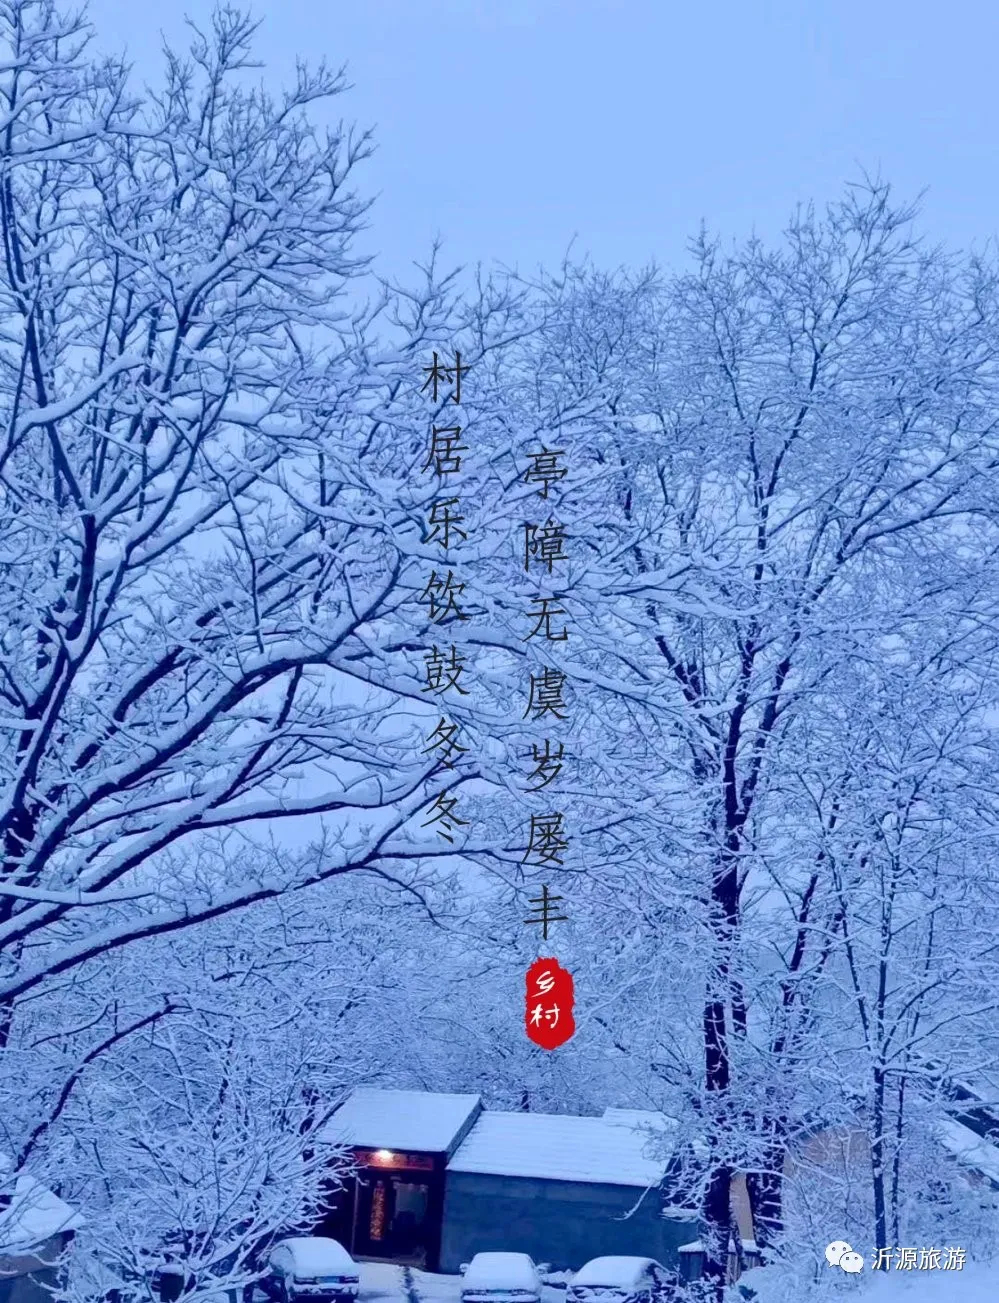 在冬日的暖阳里，把淄博这片“桃源”装进唐诗宋词里……